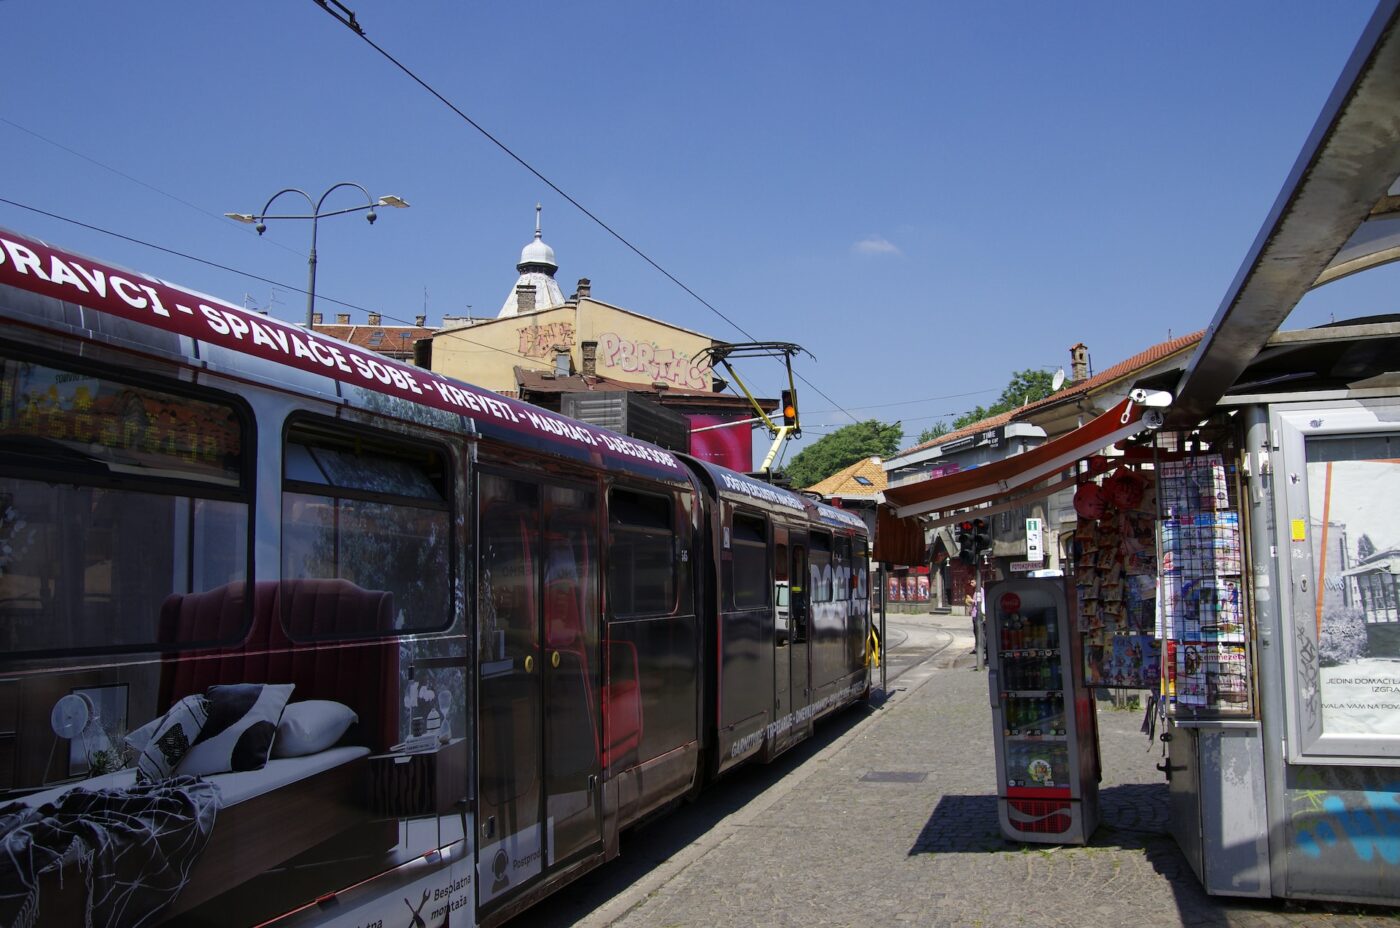 sarajevo trams, things to do in Sarajevo